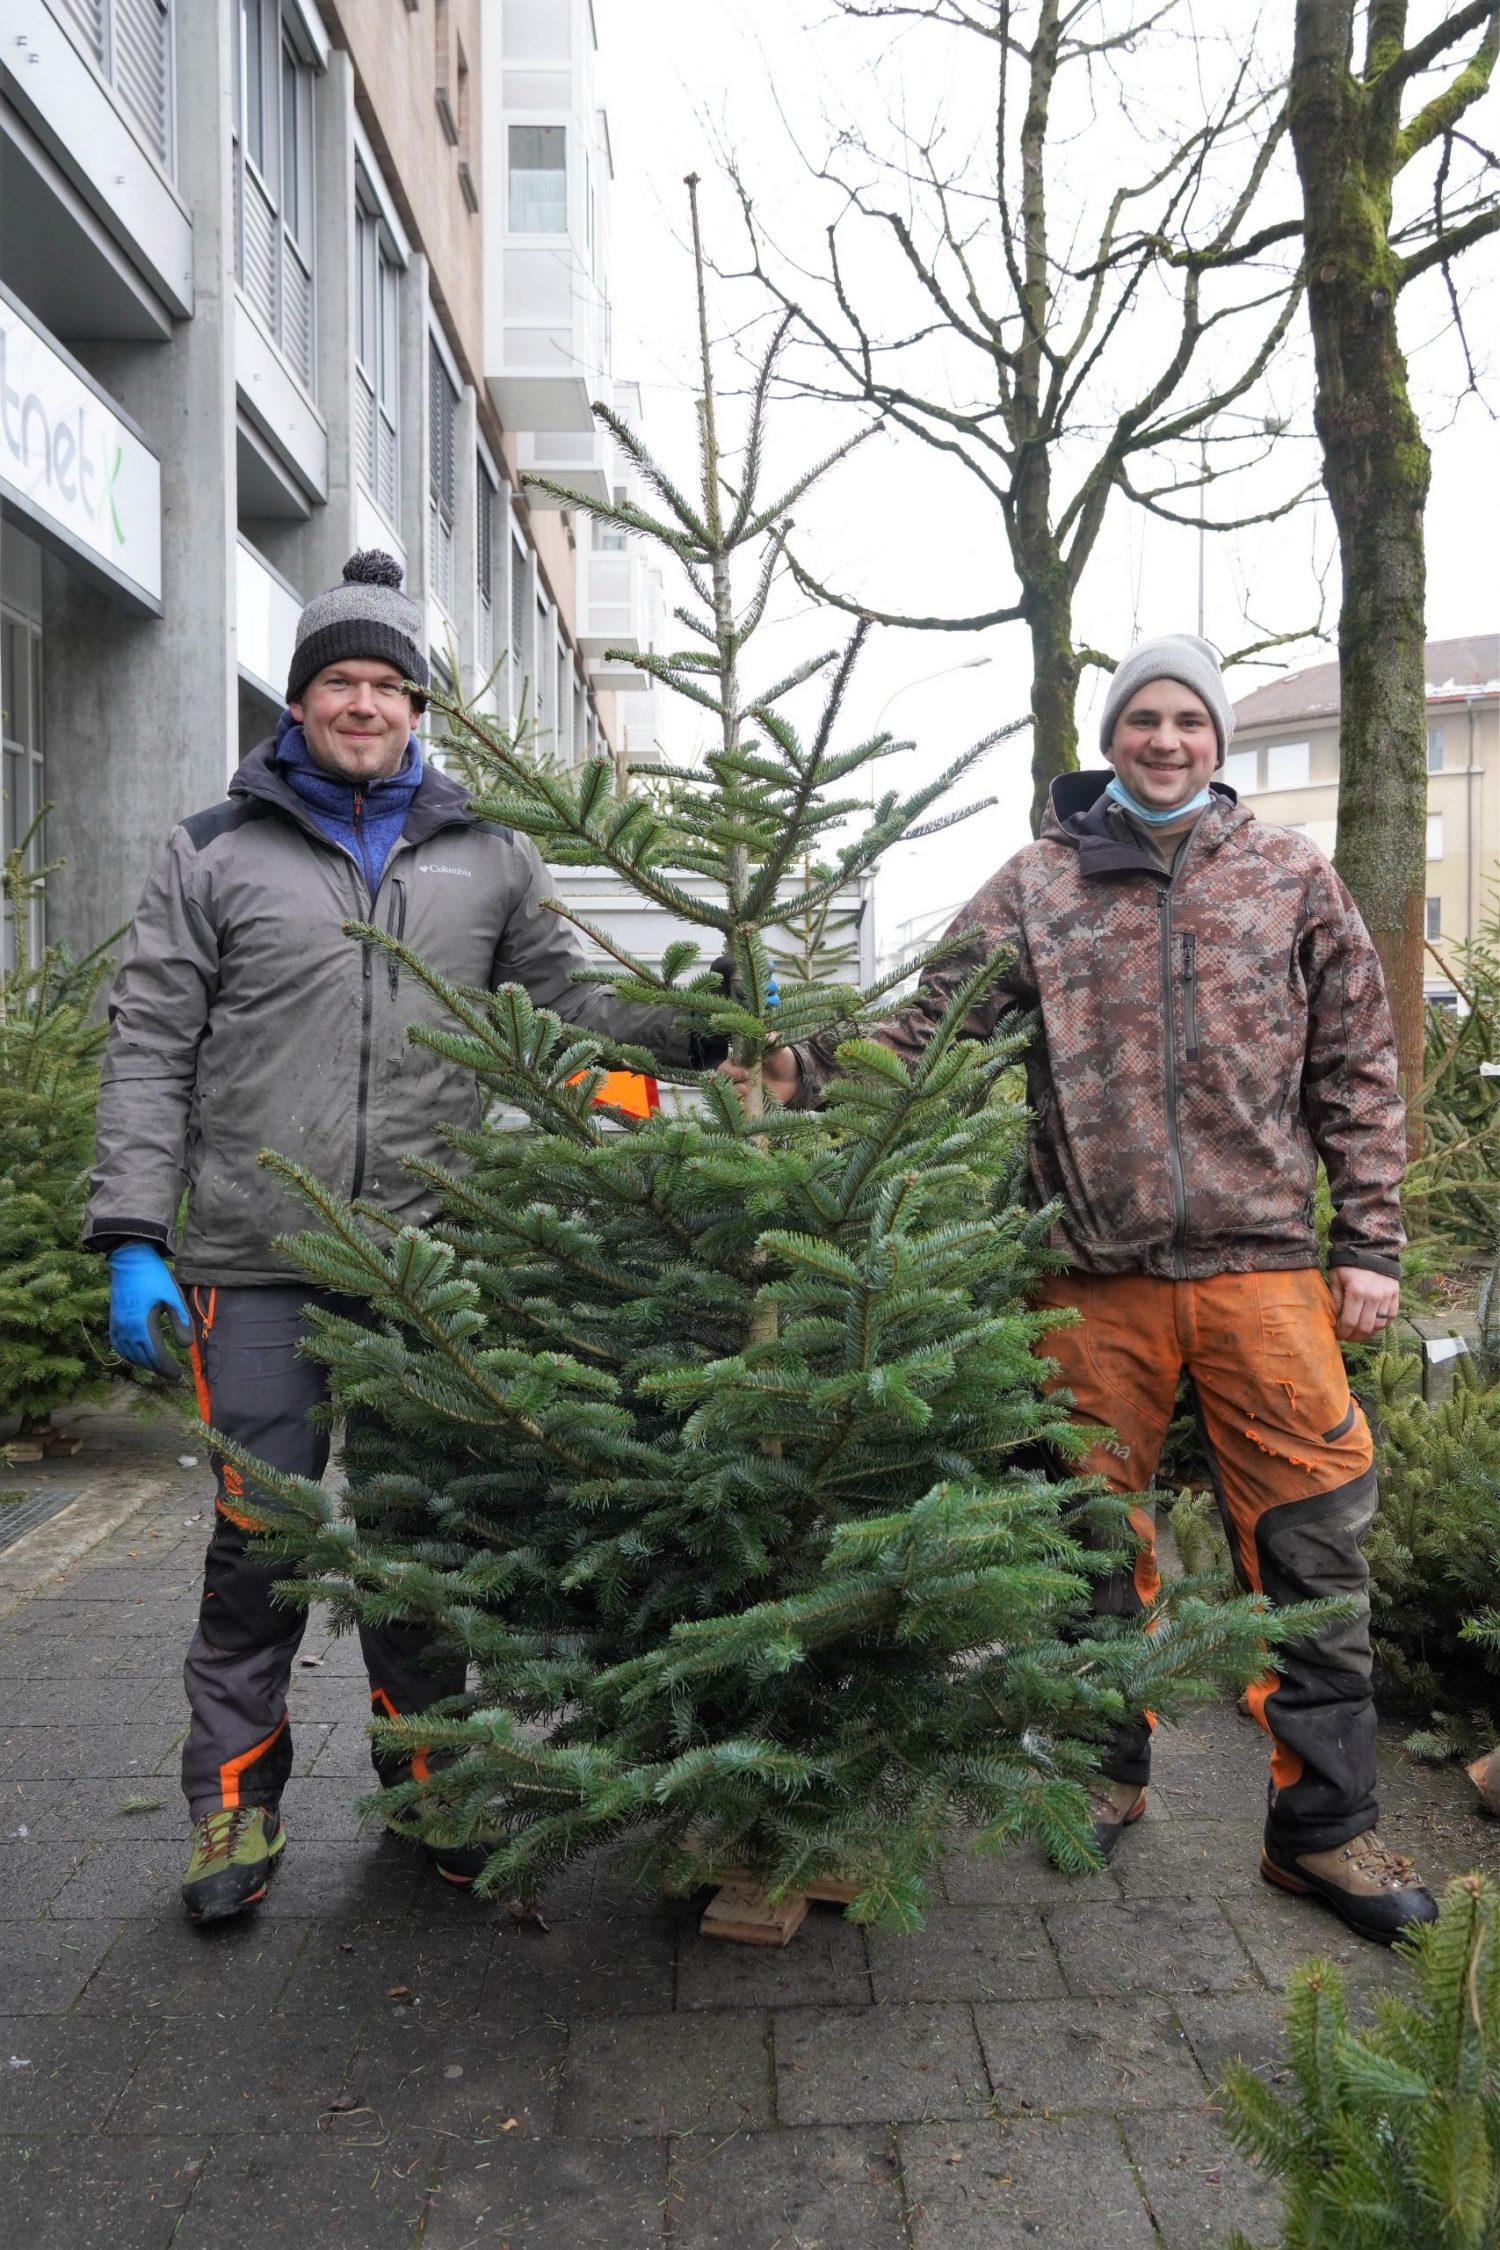 クリスマスツリーを育てる仕事をしているペーターさんと相棒